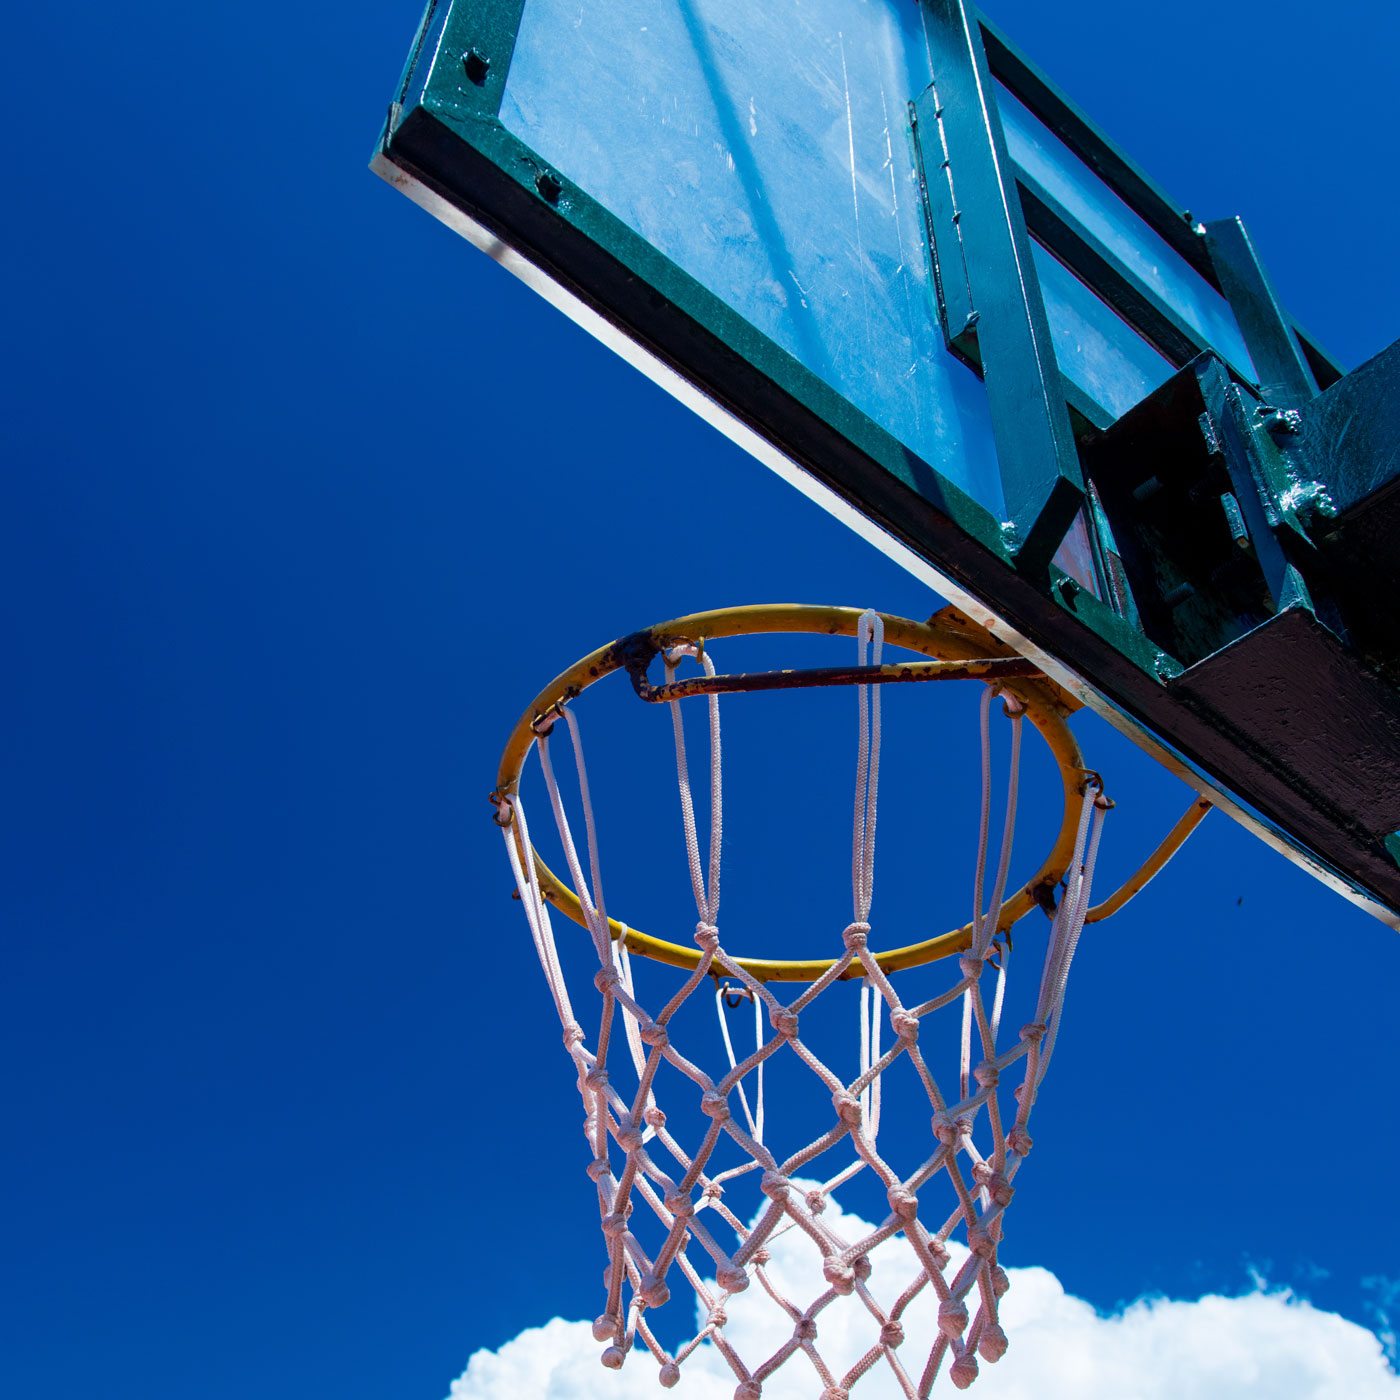 photo-of-the-basketball-hoop-2022-01-20-03-58-59-utc